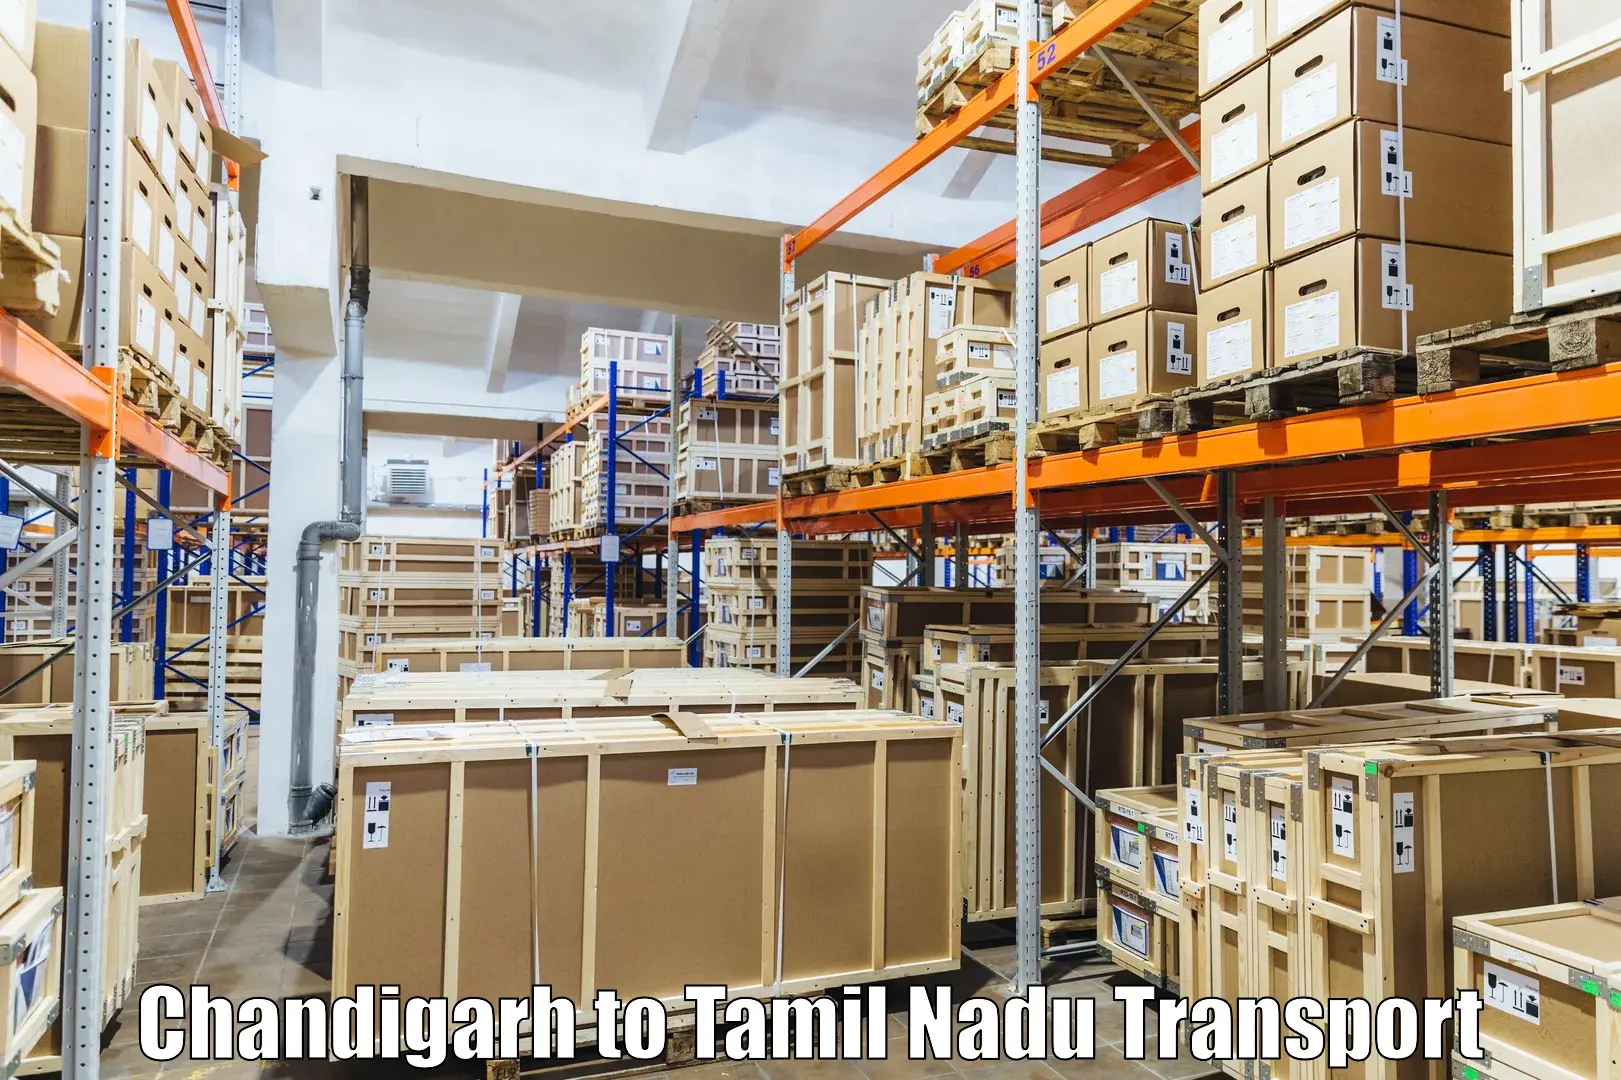 Land transport services Chandigarh to Bharathidasan University Tiruchirappalli